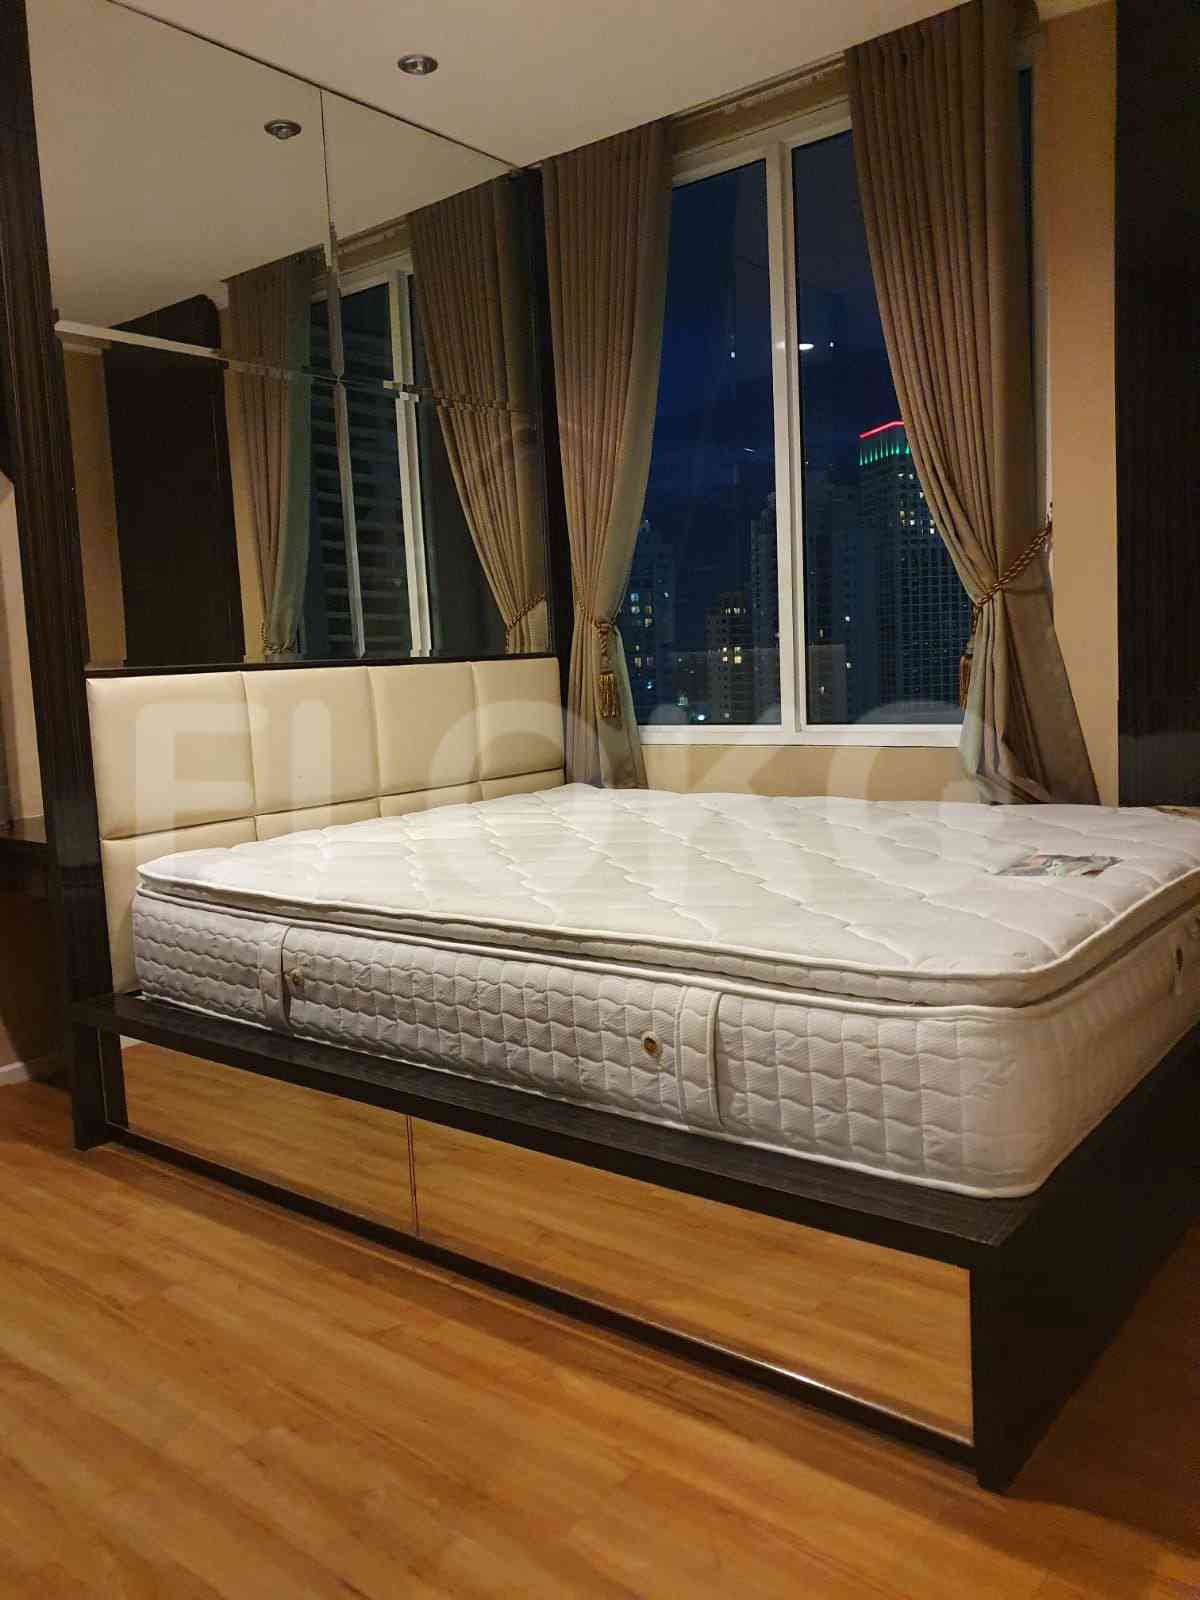 2 Bedroom on 17th Floor for Rent in FX Residence - fsua51 1